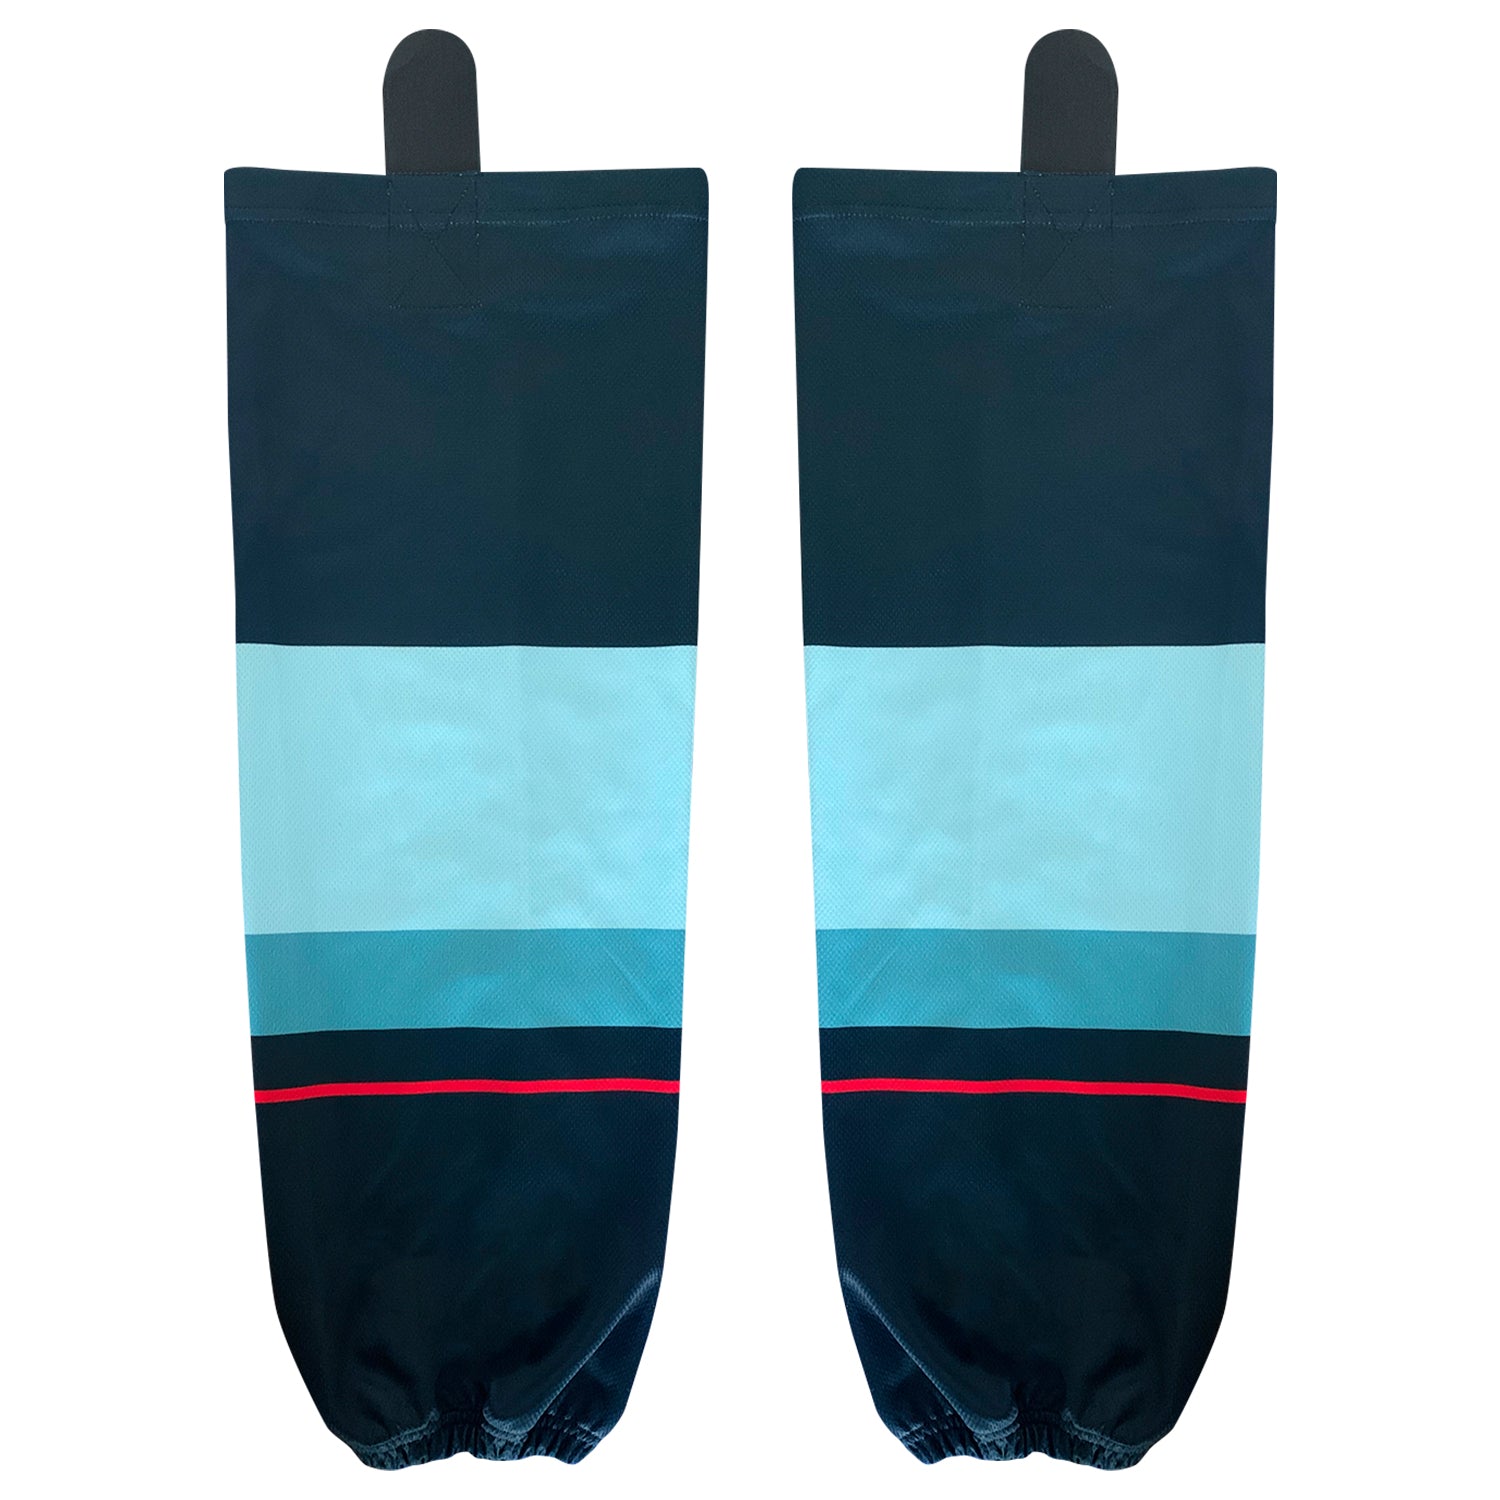 TronX (Sublimated) Sublimated Dek Hockey Jersey - Your Design